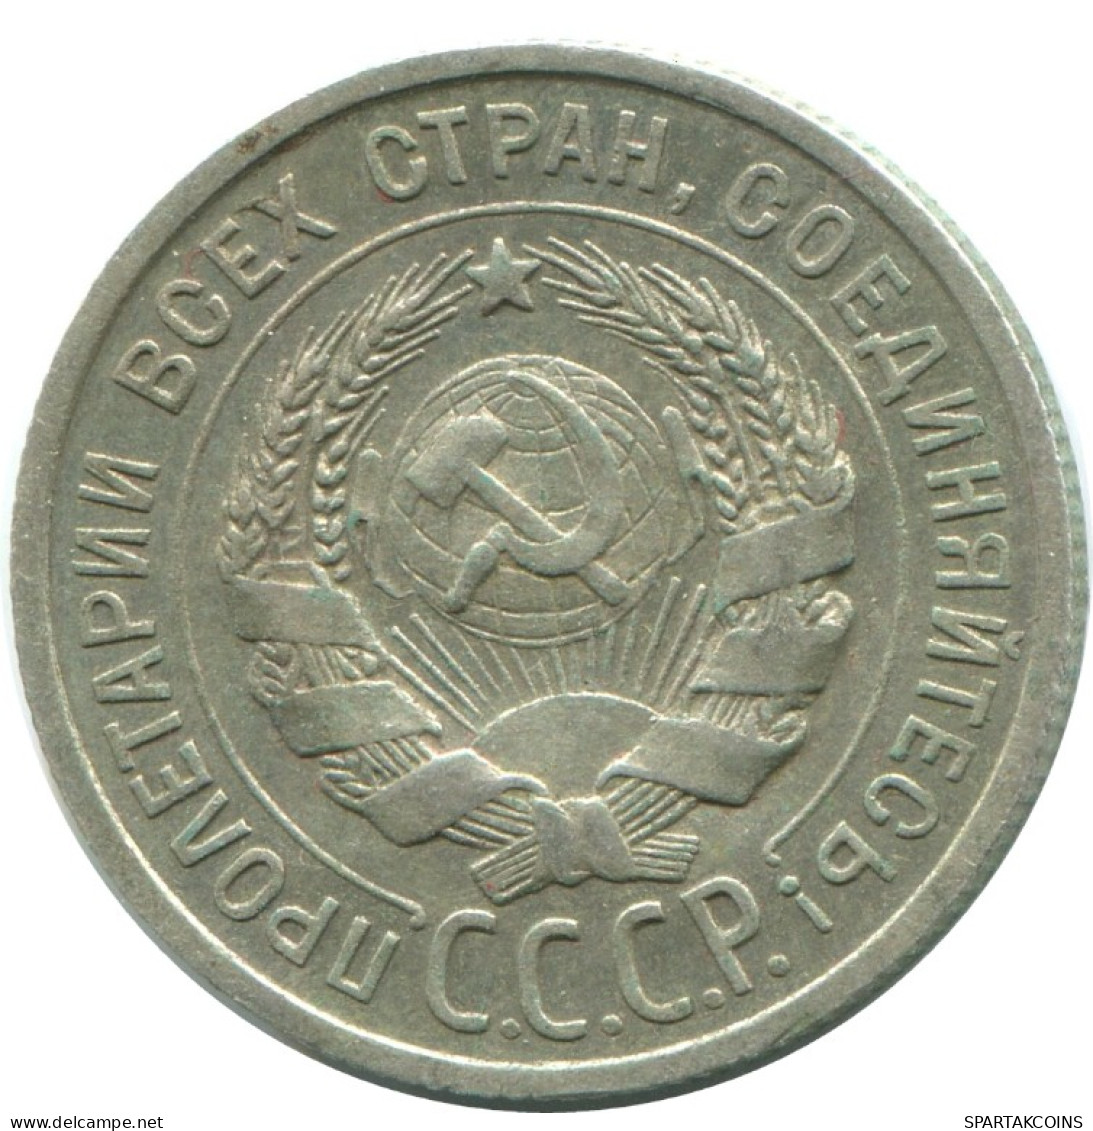 20 KOPEKS 1924 RUSSLAND RUSSIA USSR SILBER Münze HIGH GRADE #AF286.4.D.A - Russia